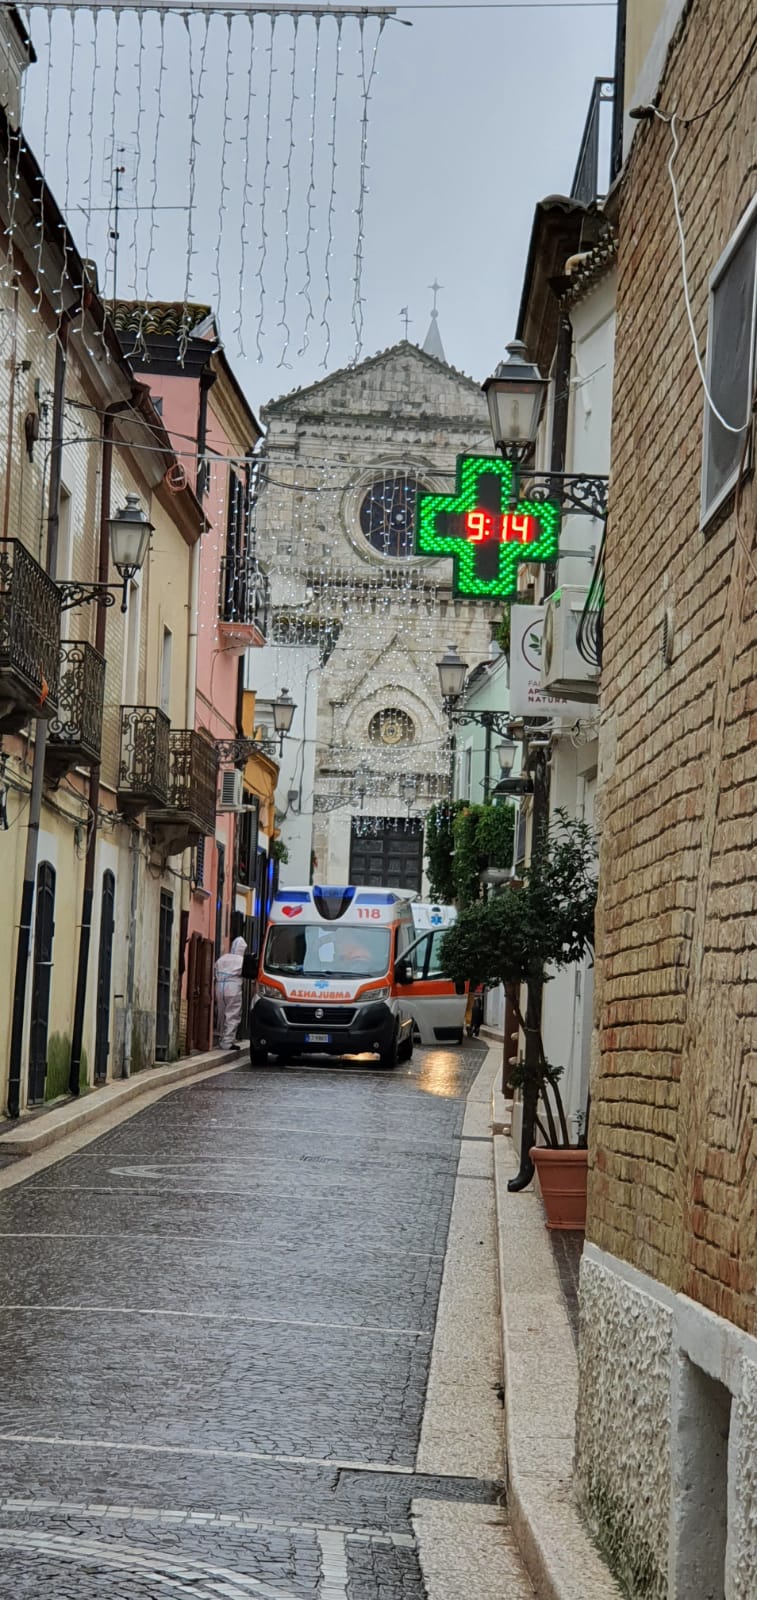 Intervento ambulanza ad Ascoli Satriano (st)